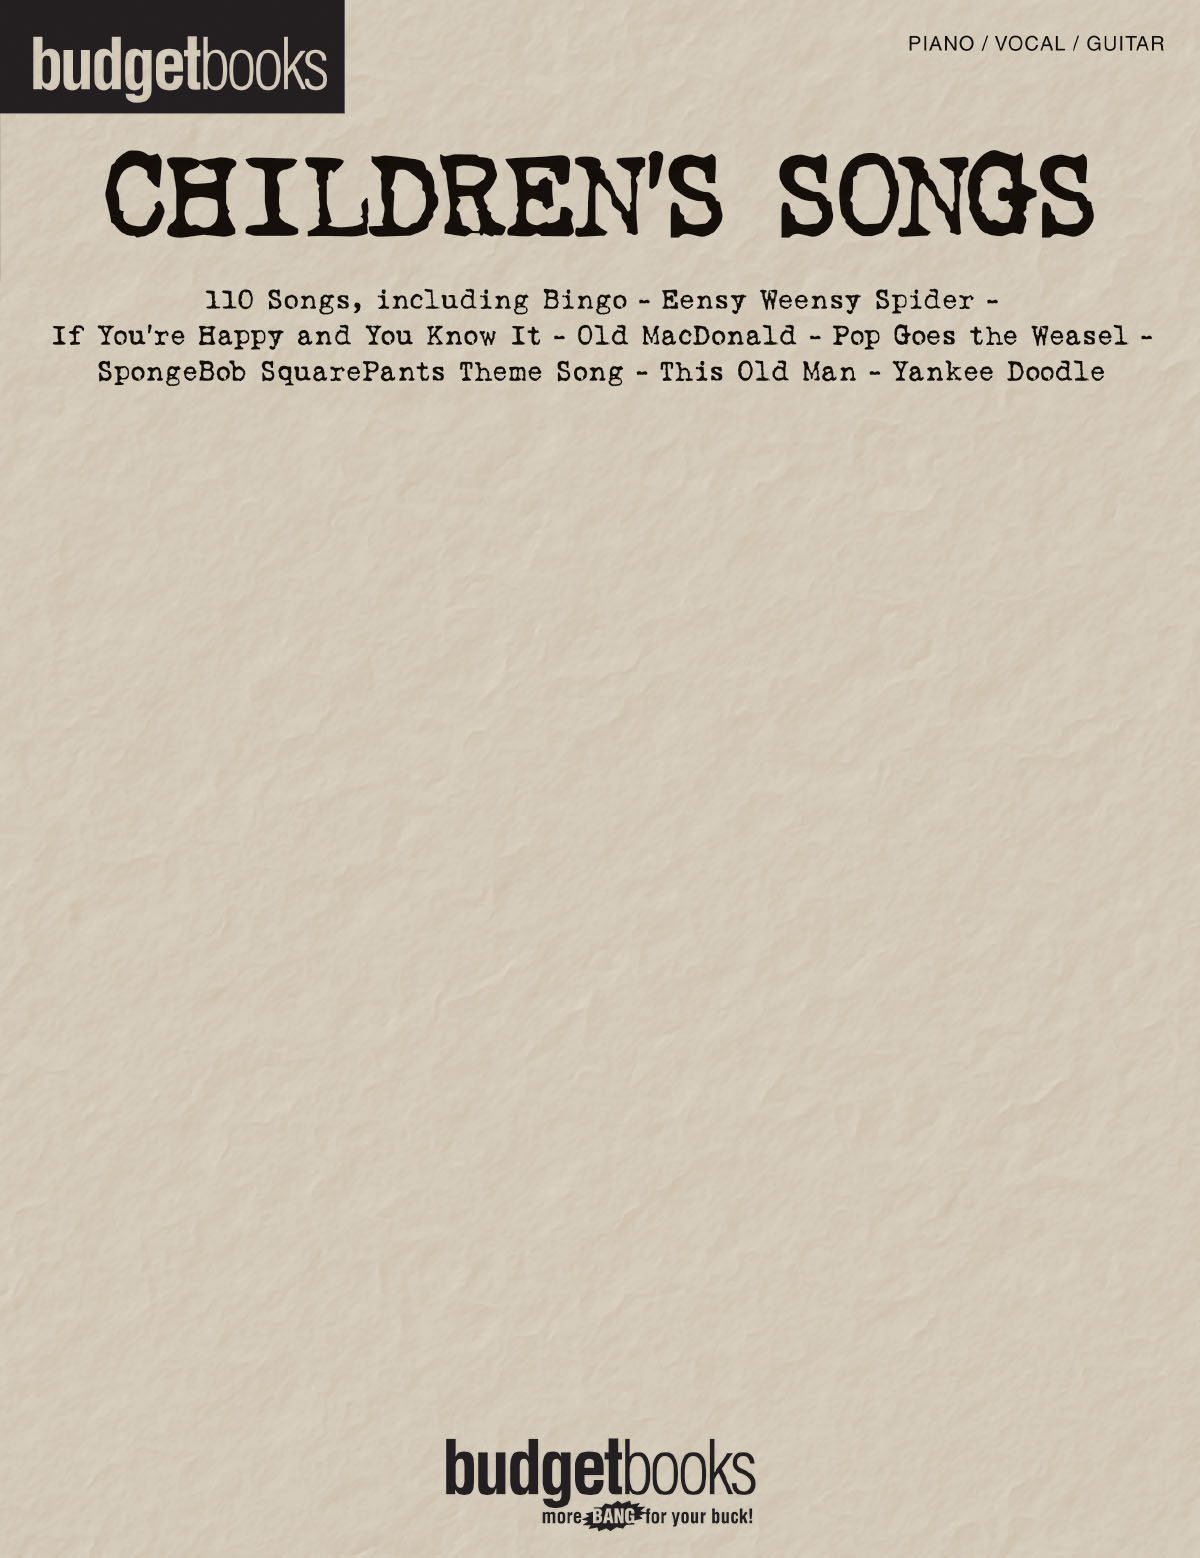 Budgetbooks: Children’s Songs